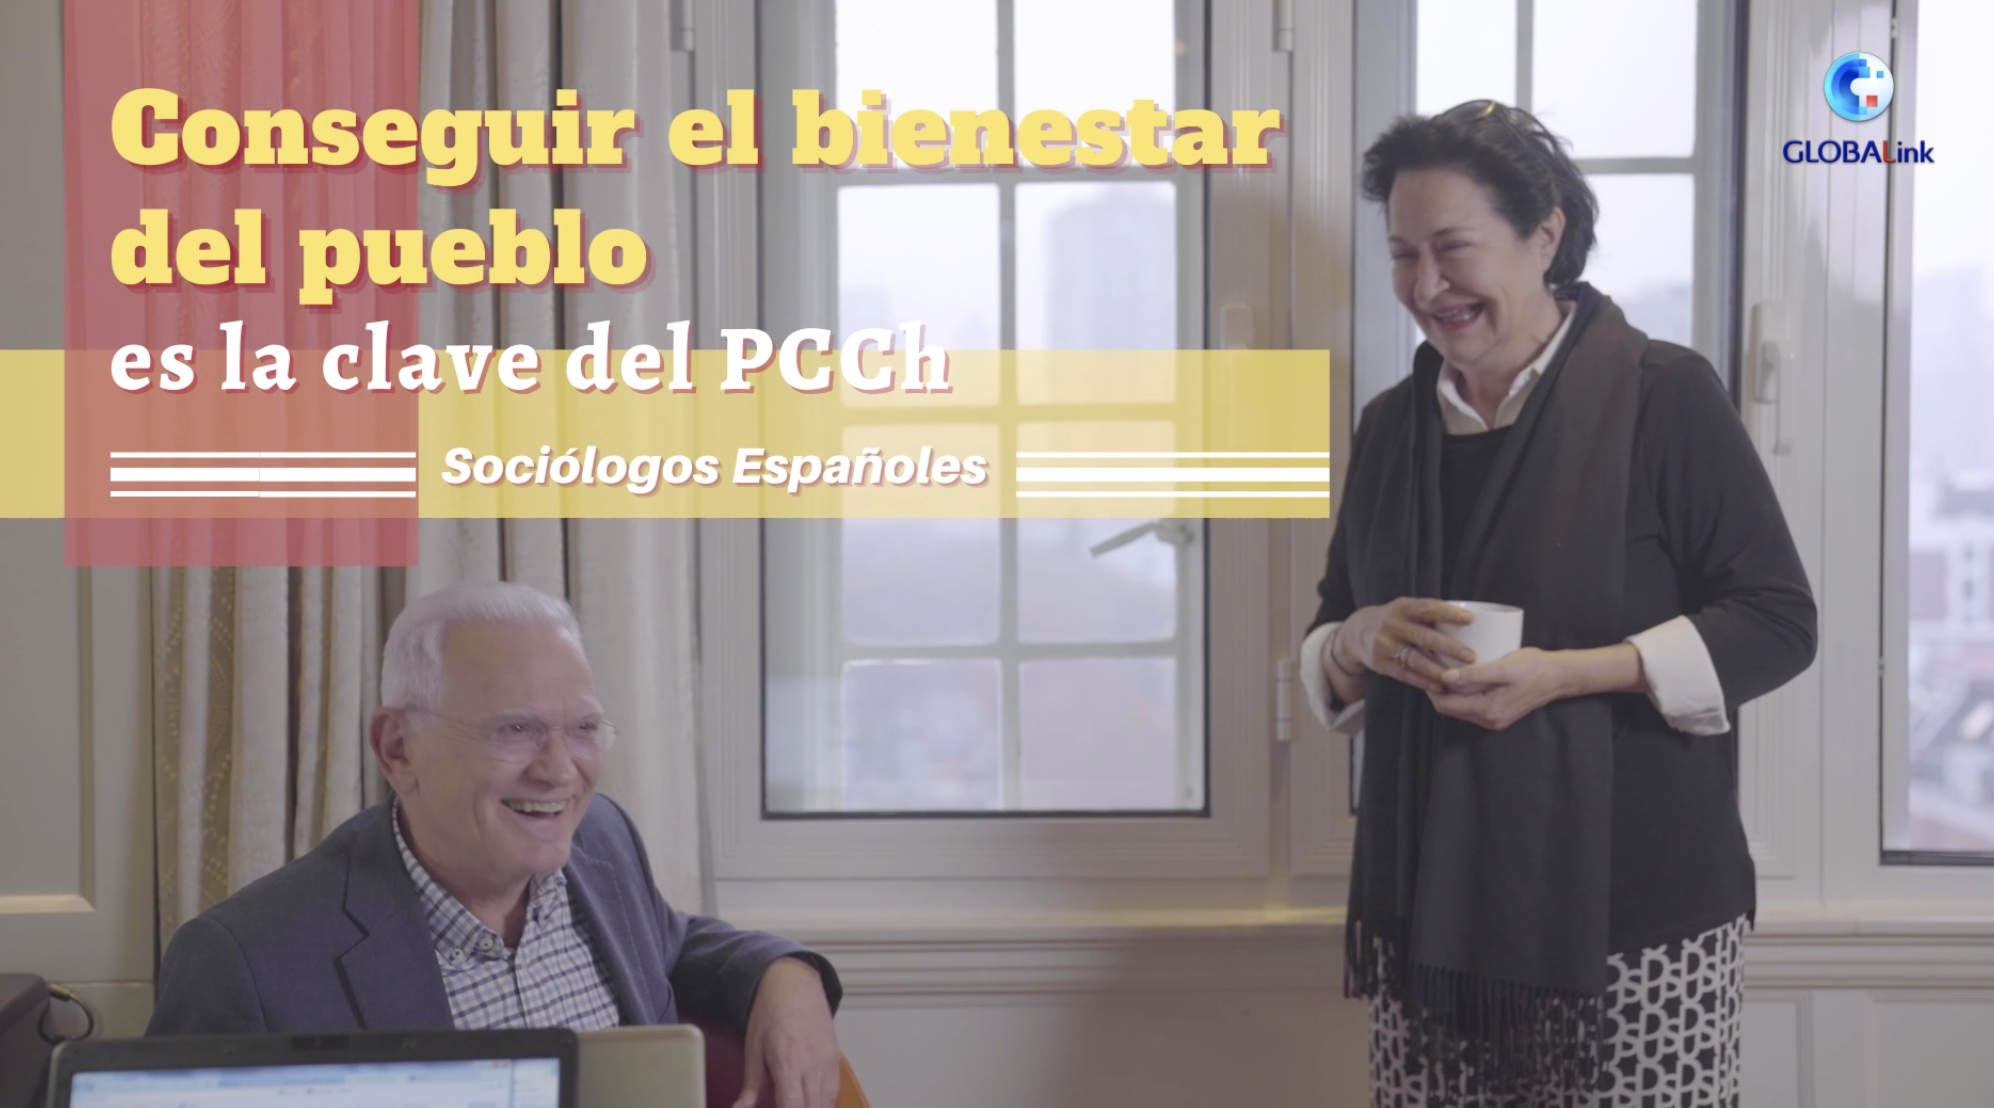 Sociólogos españoles: conseguir el bienestar del pueblo es la clave del PCCh